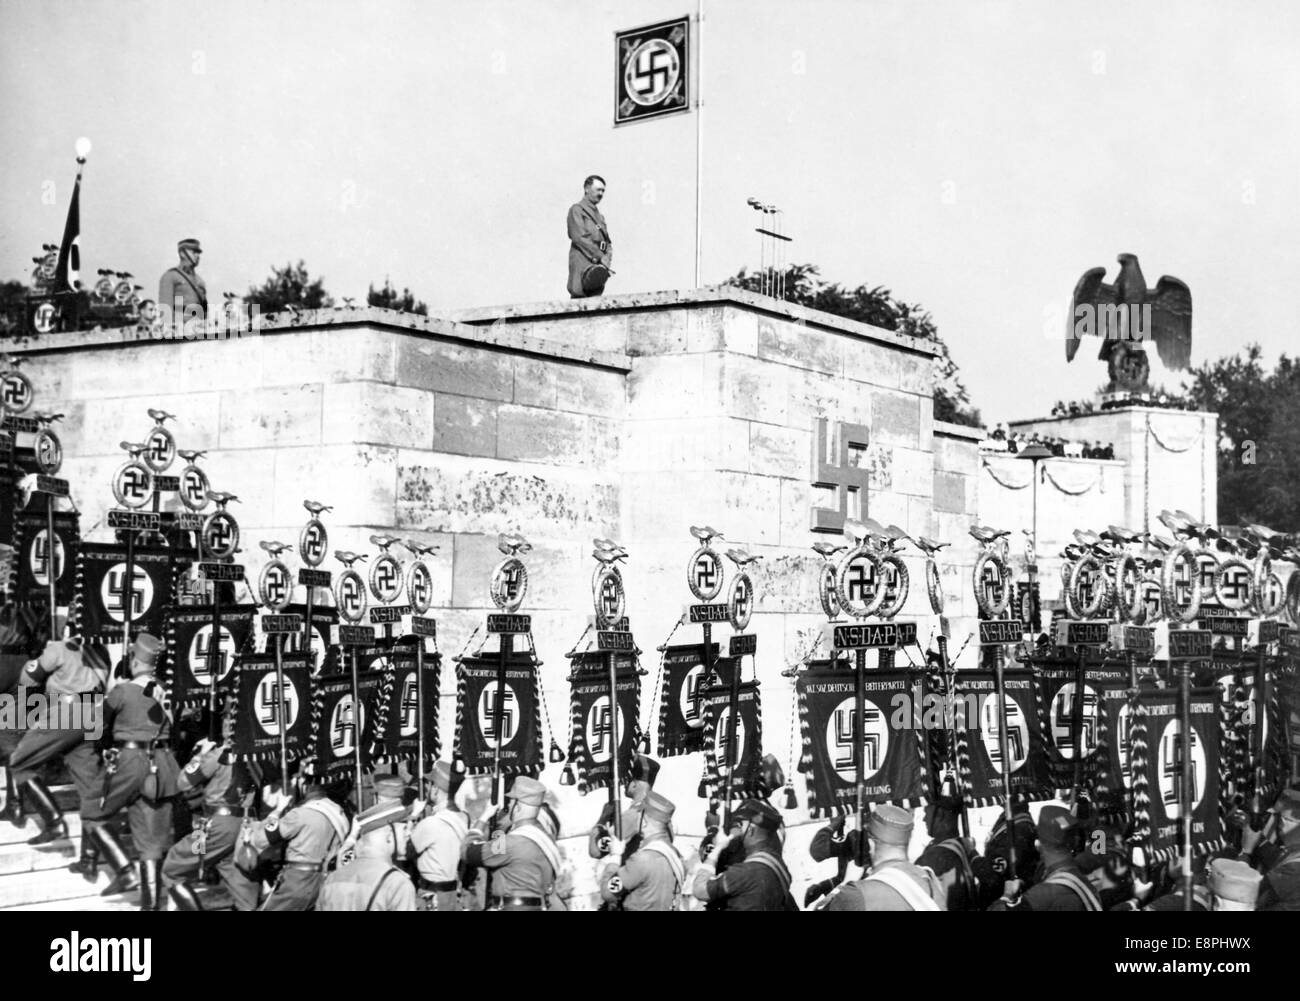 Rally di Norimberga a Norimberga, Germania - il marzo passato degli standard Adolf Hitler e la loro messa in piedi sugli stand per il grande appello di Sturmabteilung (SA), Schutzstaffel (SS), National Socialist Motor Corps (NSKK), e National Socialist Flyers Corps (NSFK) a Luitpoldarena presso il partito nazista raduno. (Difetti di qualità dovuti alla copia storica dell'immagine) Fotoarchiv für Zeitgeschichtee - NESSUN SERVIZIO DI CABLAGGIO - Foto Stock